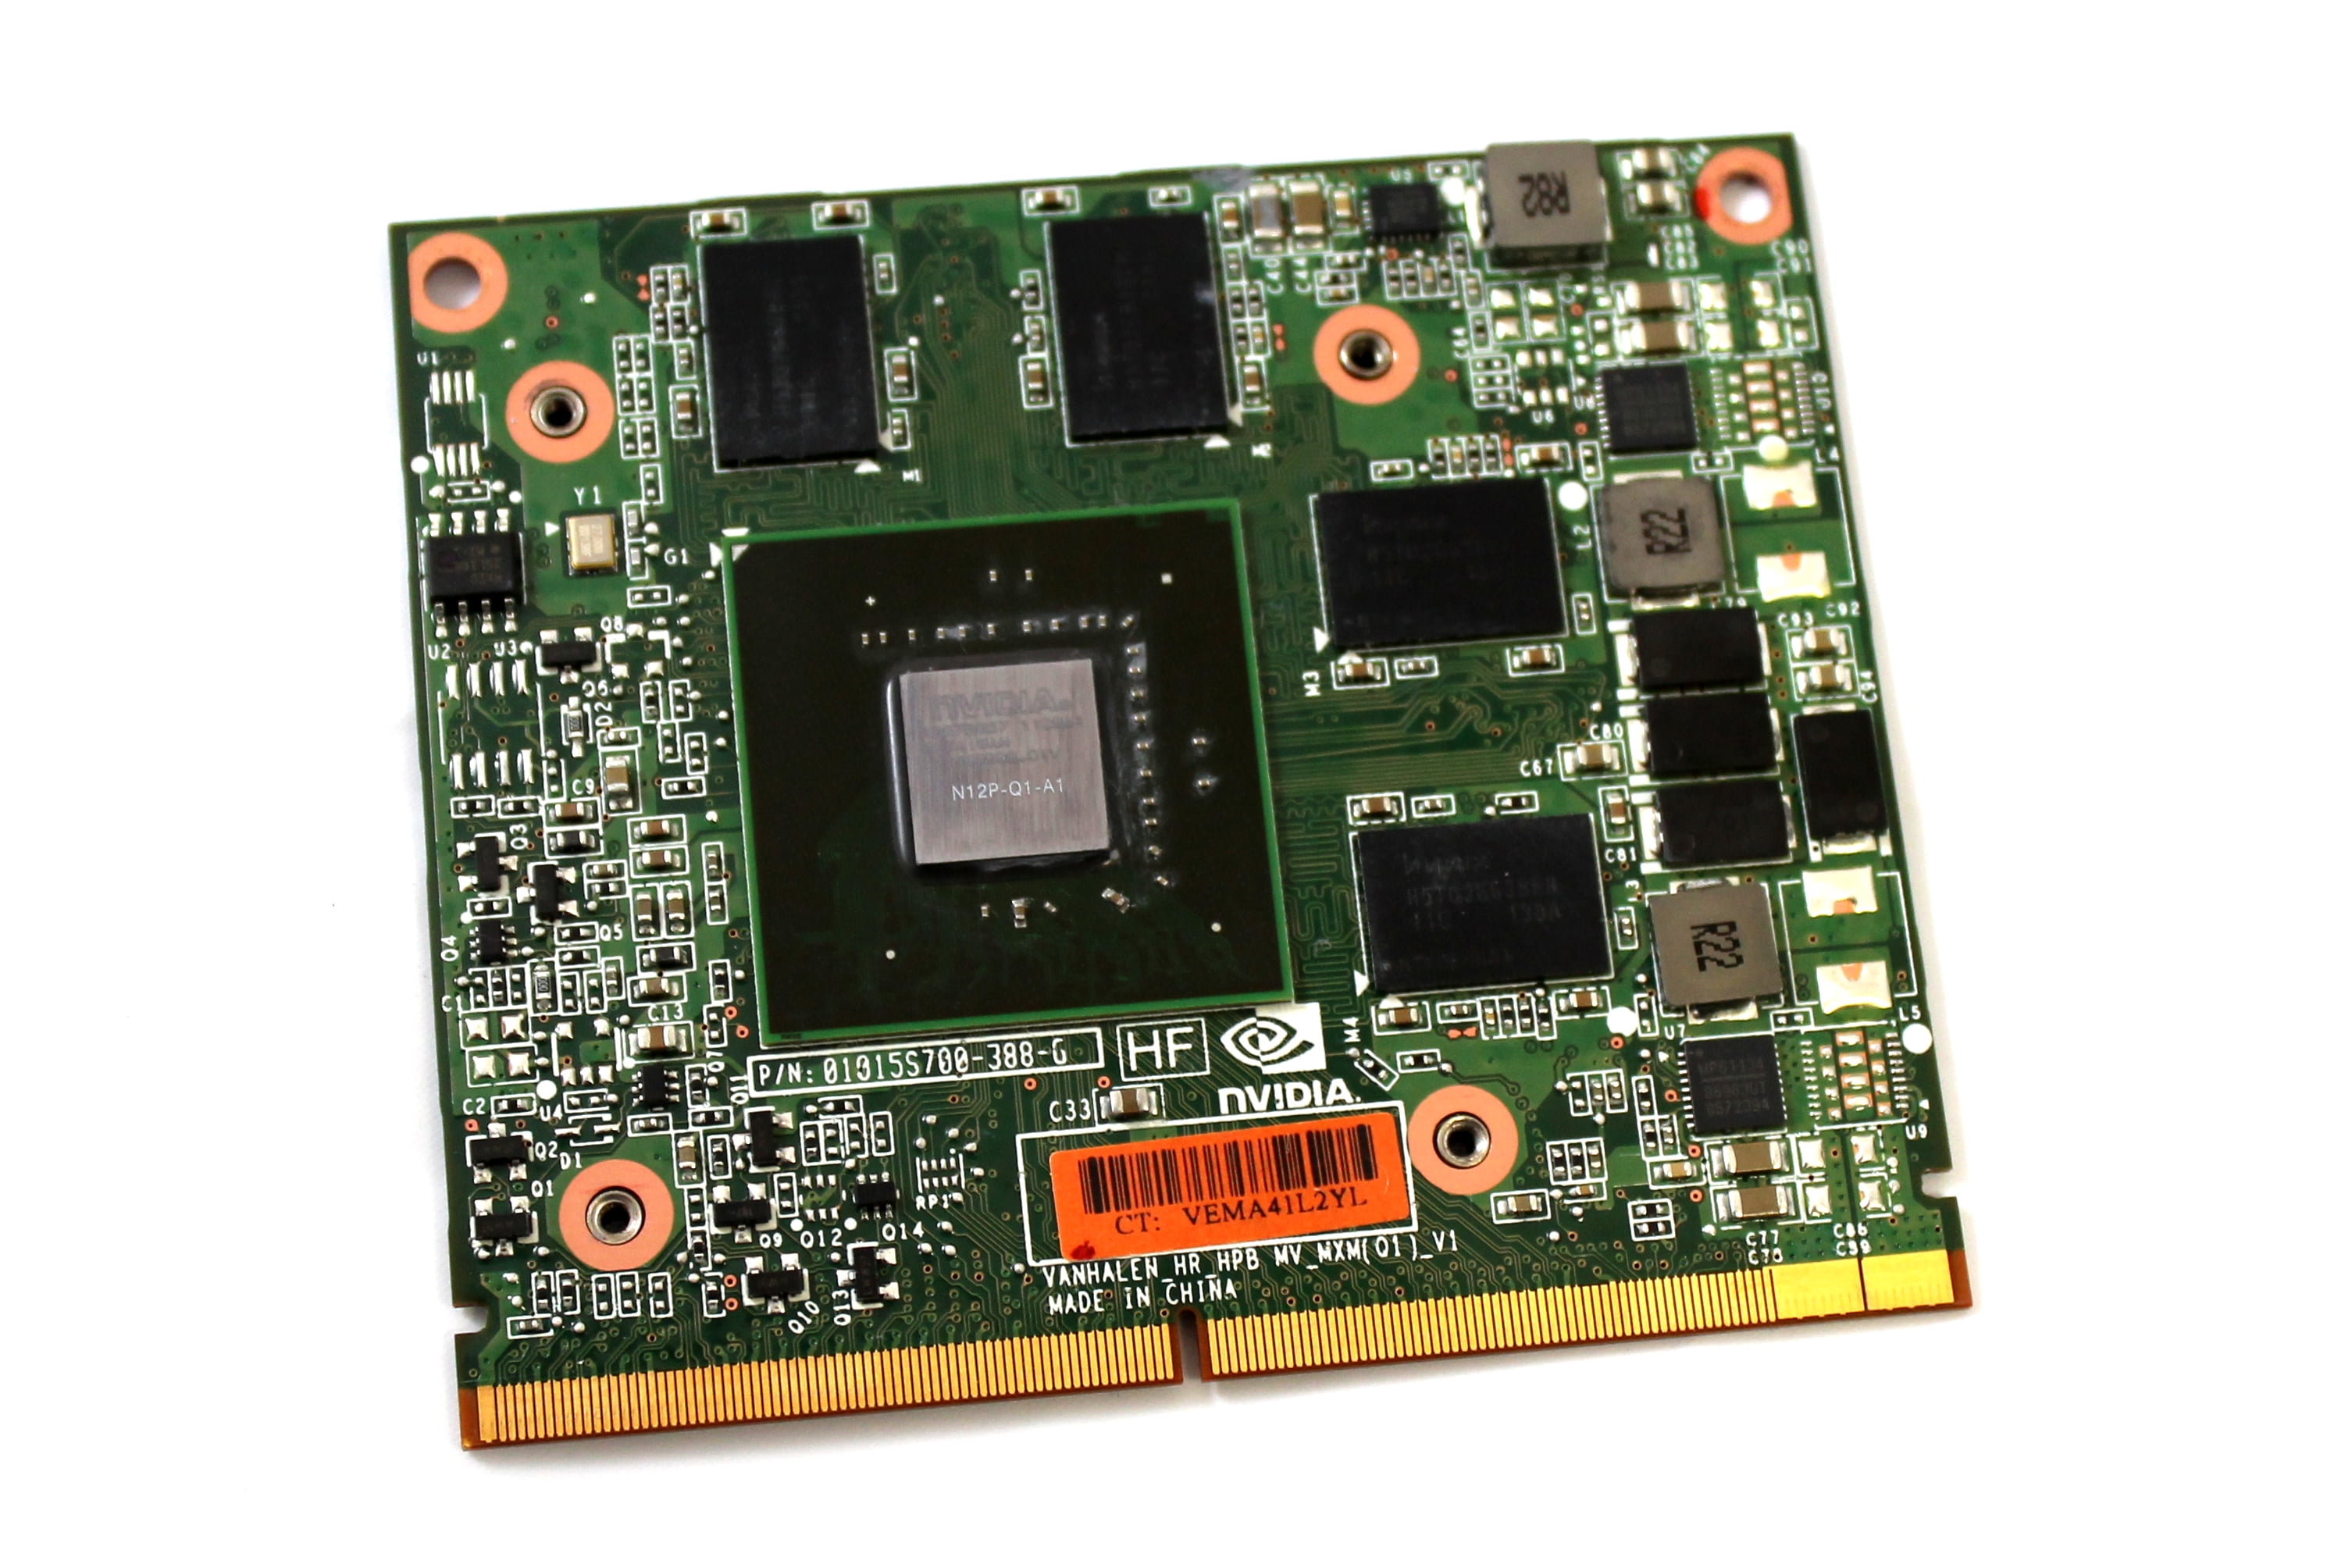 HP Blc Emulex Lpe1205a Fc Hba 8Gbps Card (Certified Refurbished 